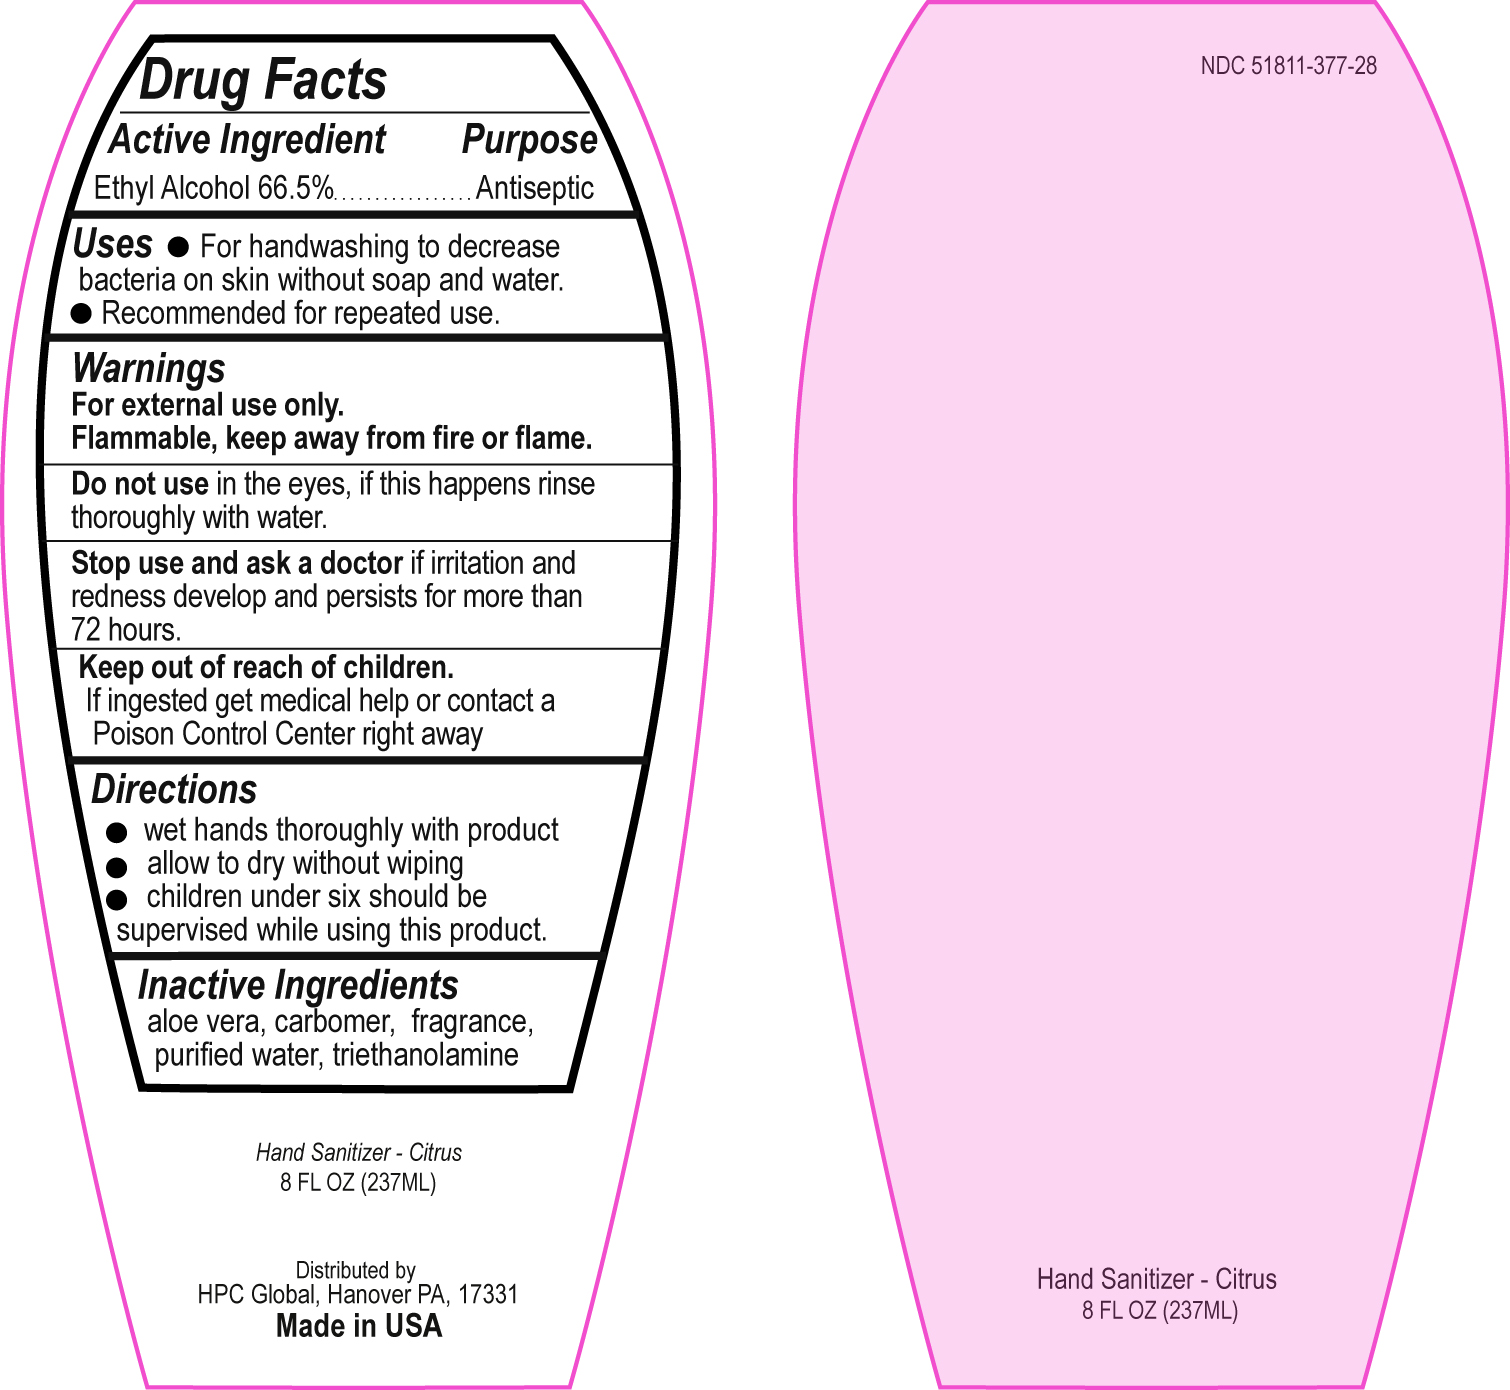 Image Drug Facts Label